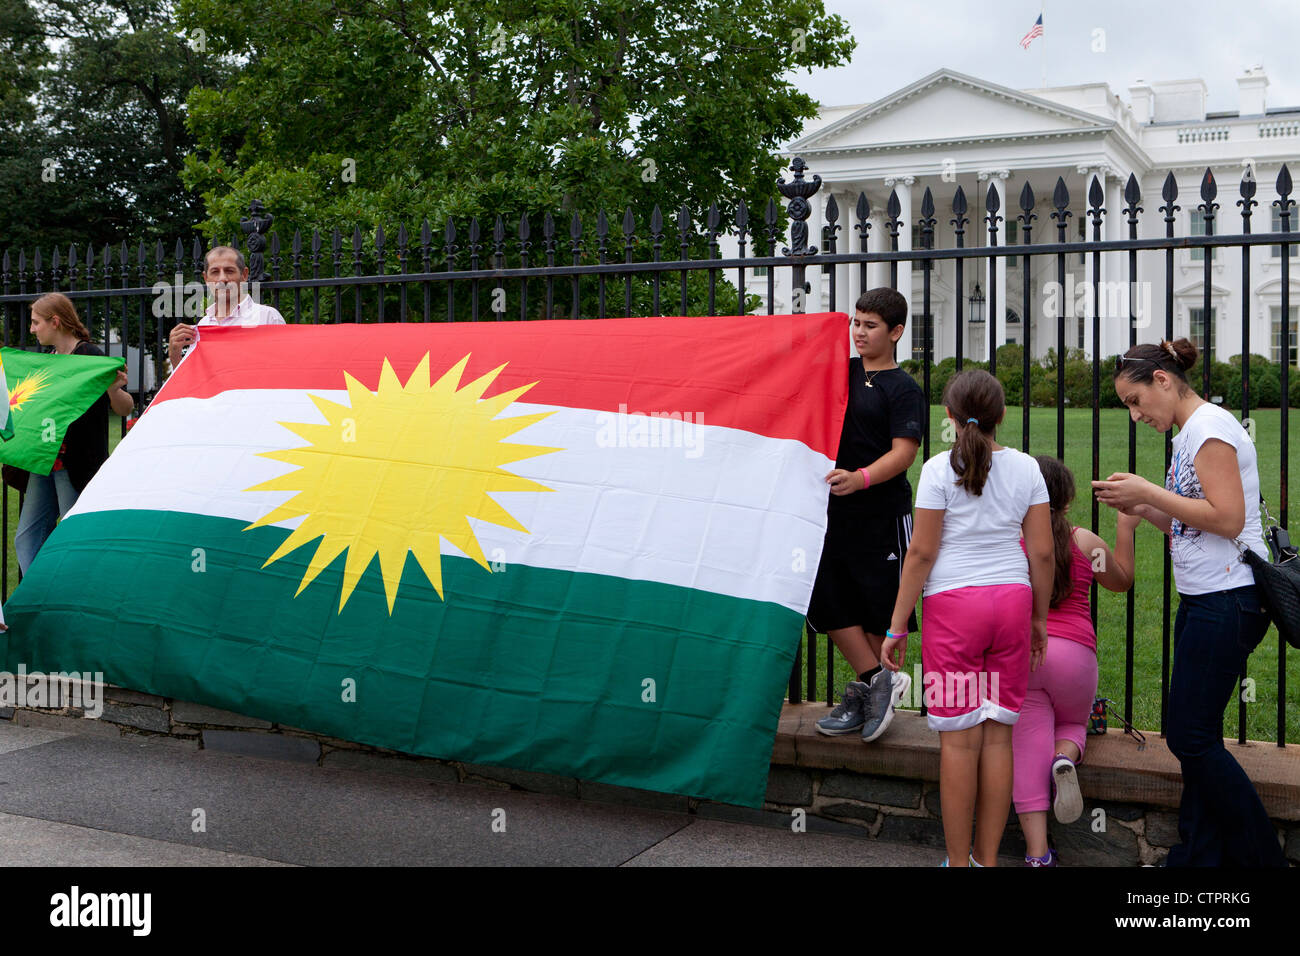 American kurdes brandis un drapeau kurde en face de la Maison Blanche - Washington, DC USA Banque D'Images